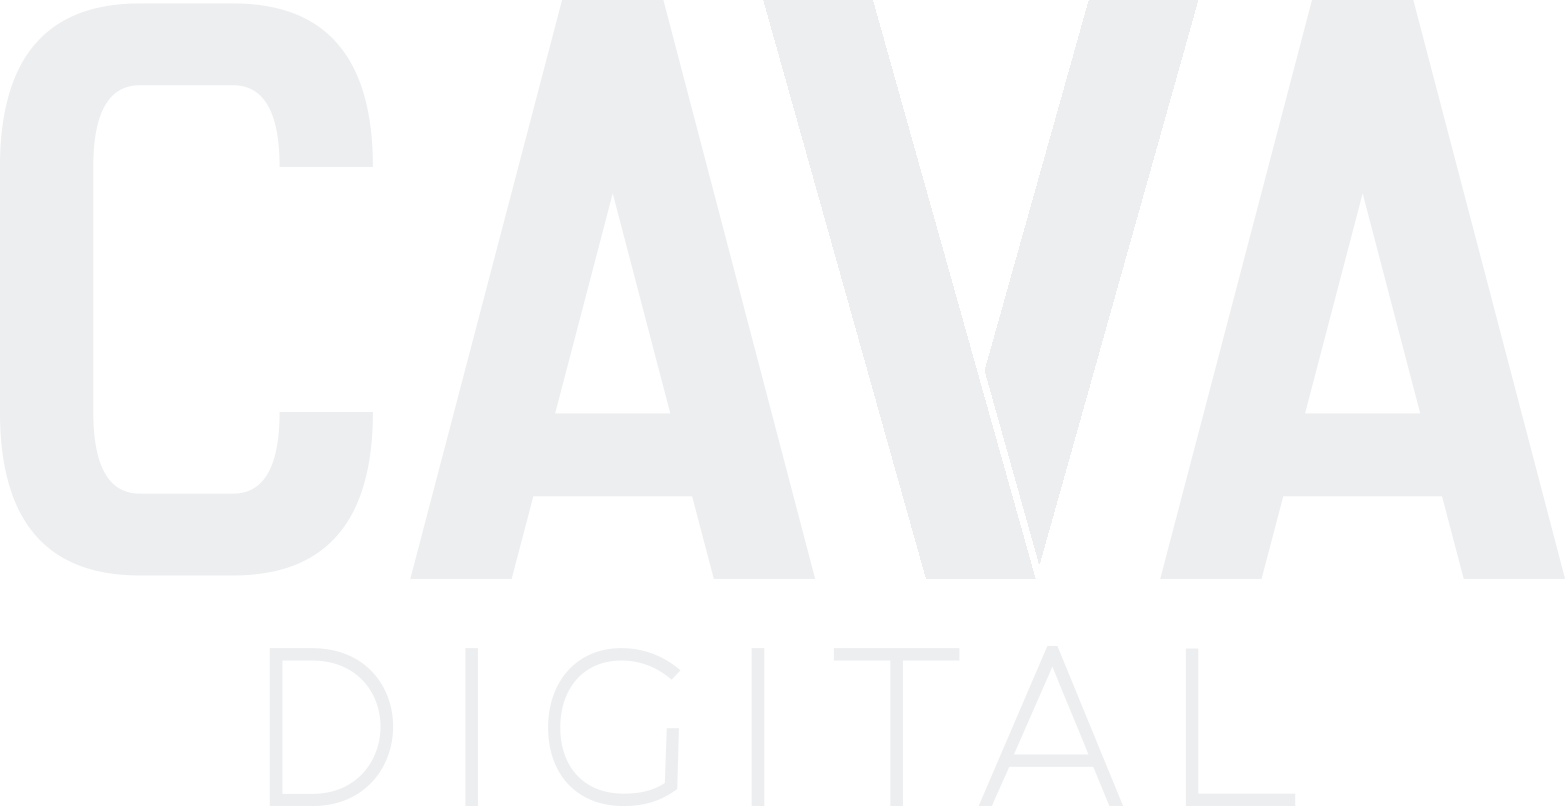 CAVA Digital